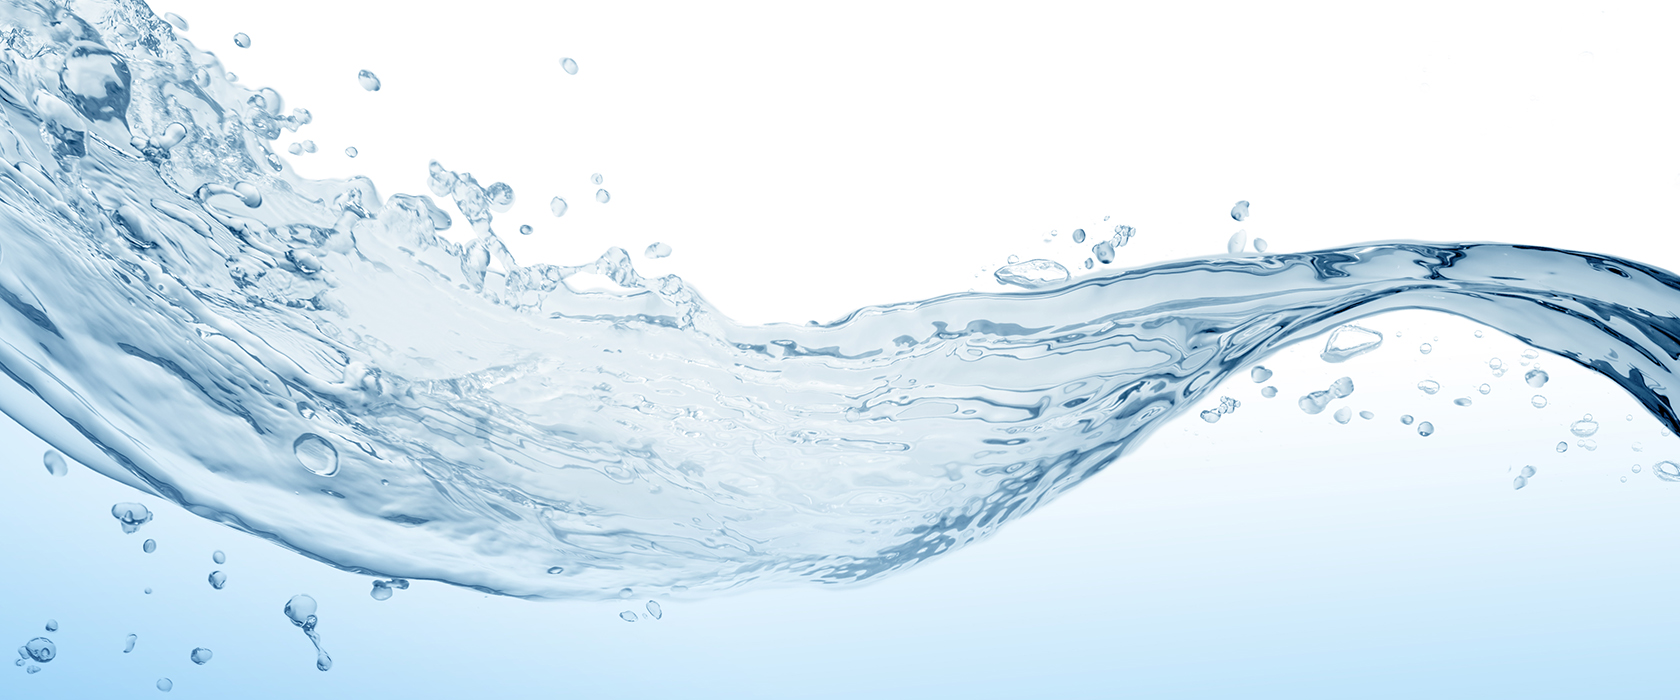 Дистиллированная вода: как она работает и почему